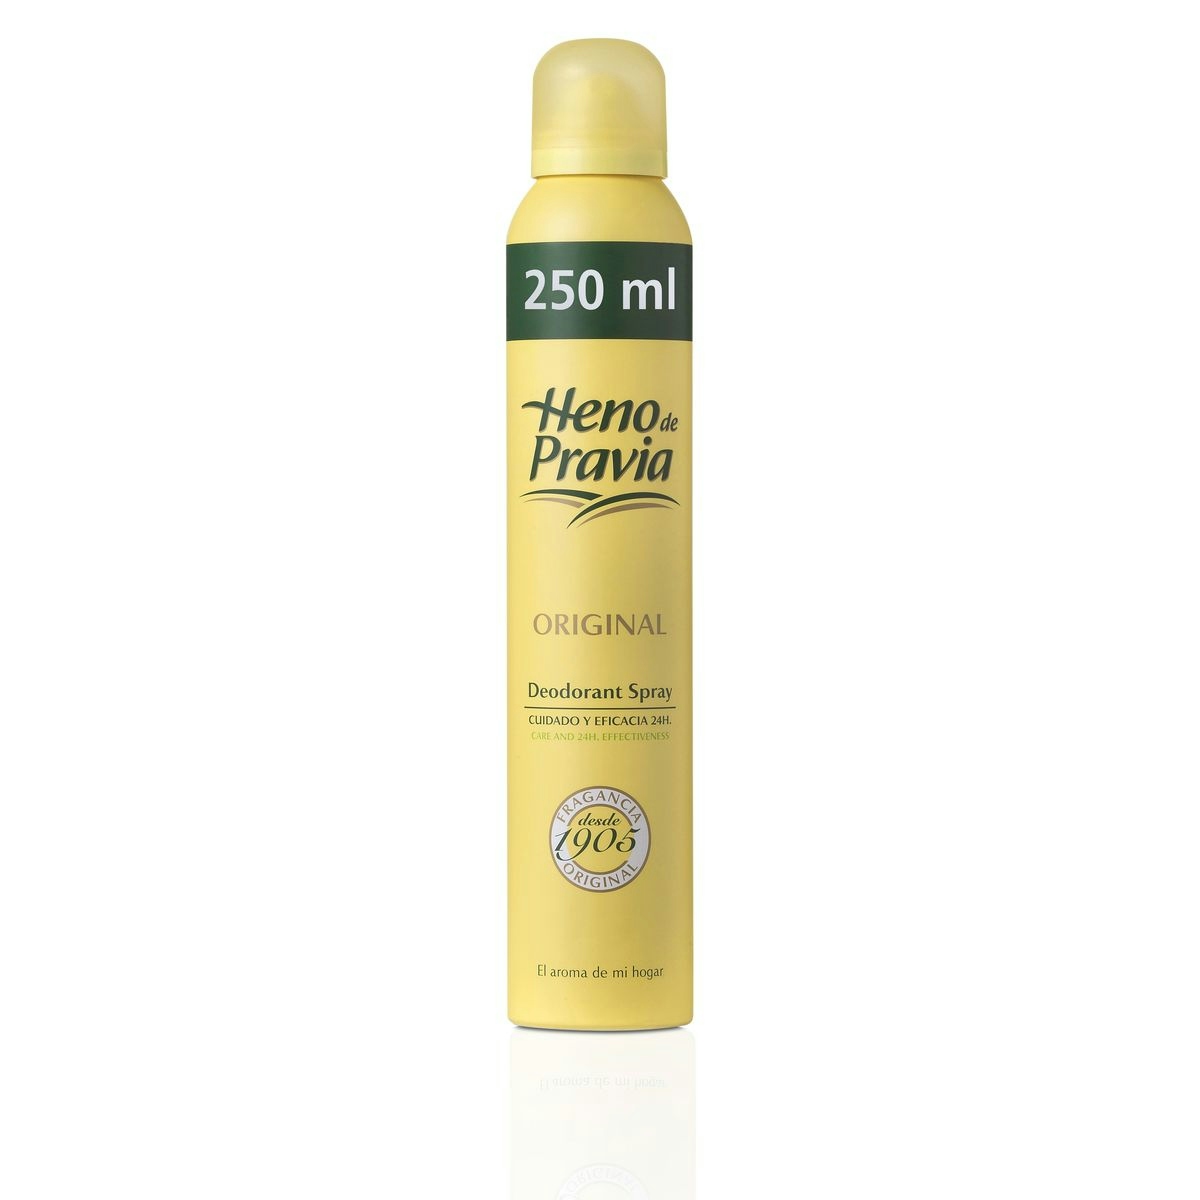 Desodorante original HENO DE PRAVIA spray 250 ml